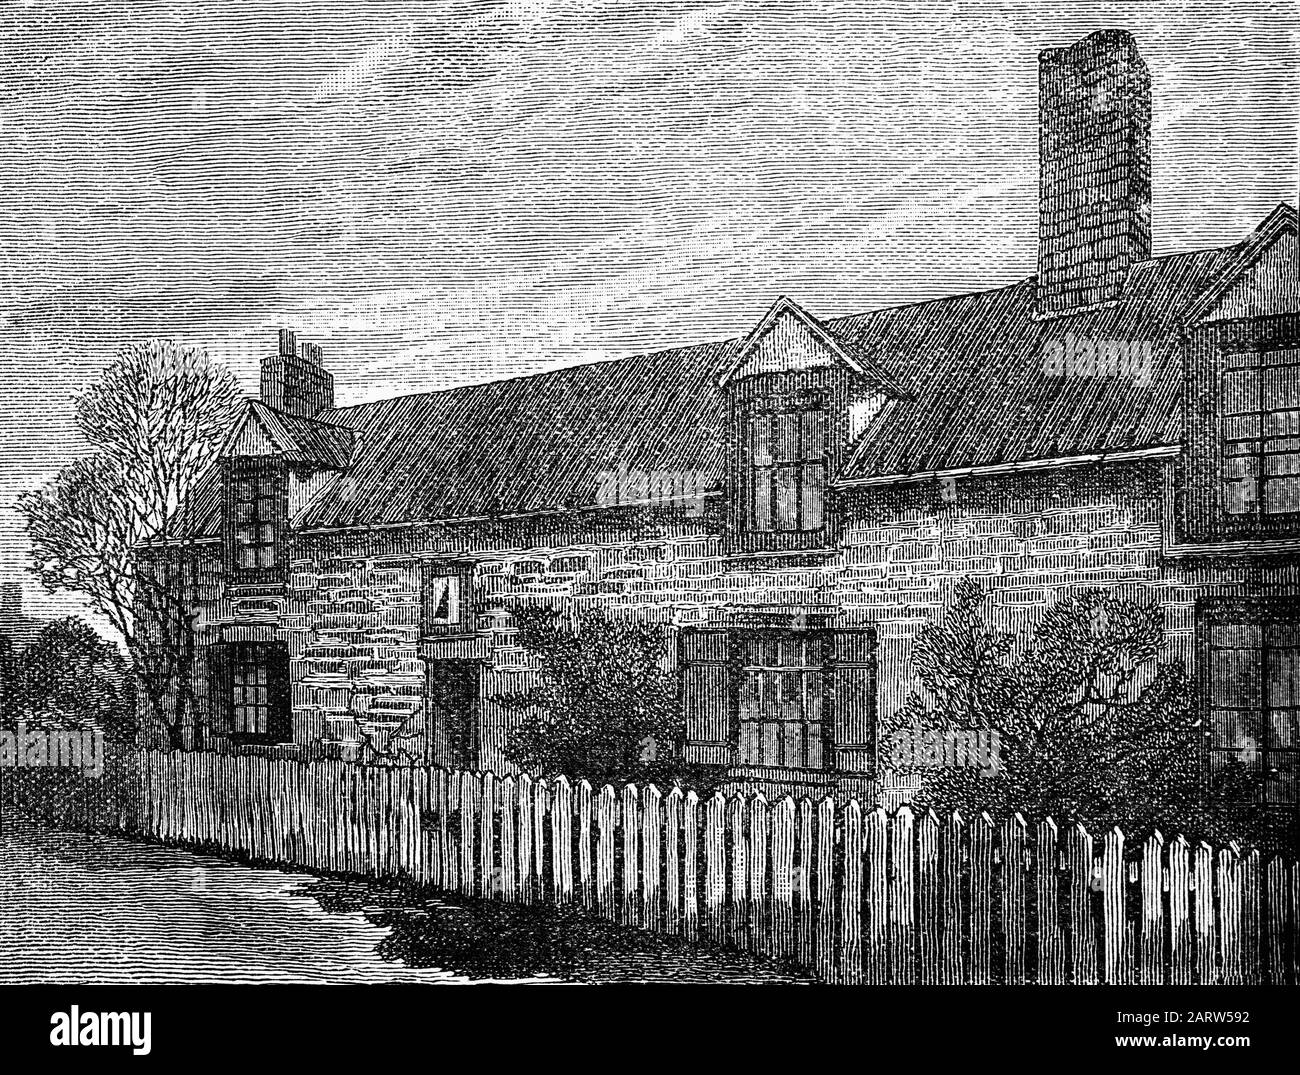 George Stephenson lebte in 'Dial Cottage', das noch an der Great Lime Road in West Moor südlich von Killingworth steht. Stephenson, ursprünglich ein Haus mit einem Boom, baute das Gelände aus und baute es zu einem komfortablen Vierzimmerhaus Um. Als sie dort lebte, entwickelte Stephenson dort eine der ältesten Lokomotiven, genannt die "Blücher", die im Jahr 1814 auf der Zechenbahn Killingworth verkehrte. Stockfoto